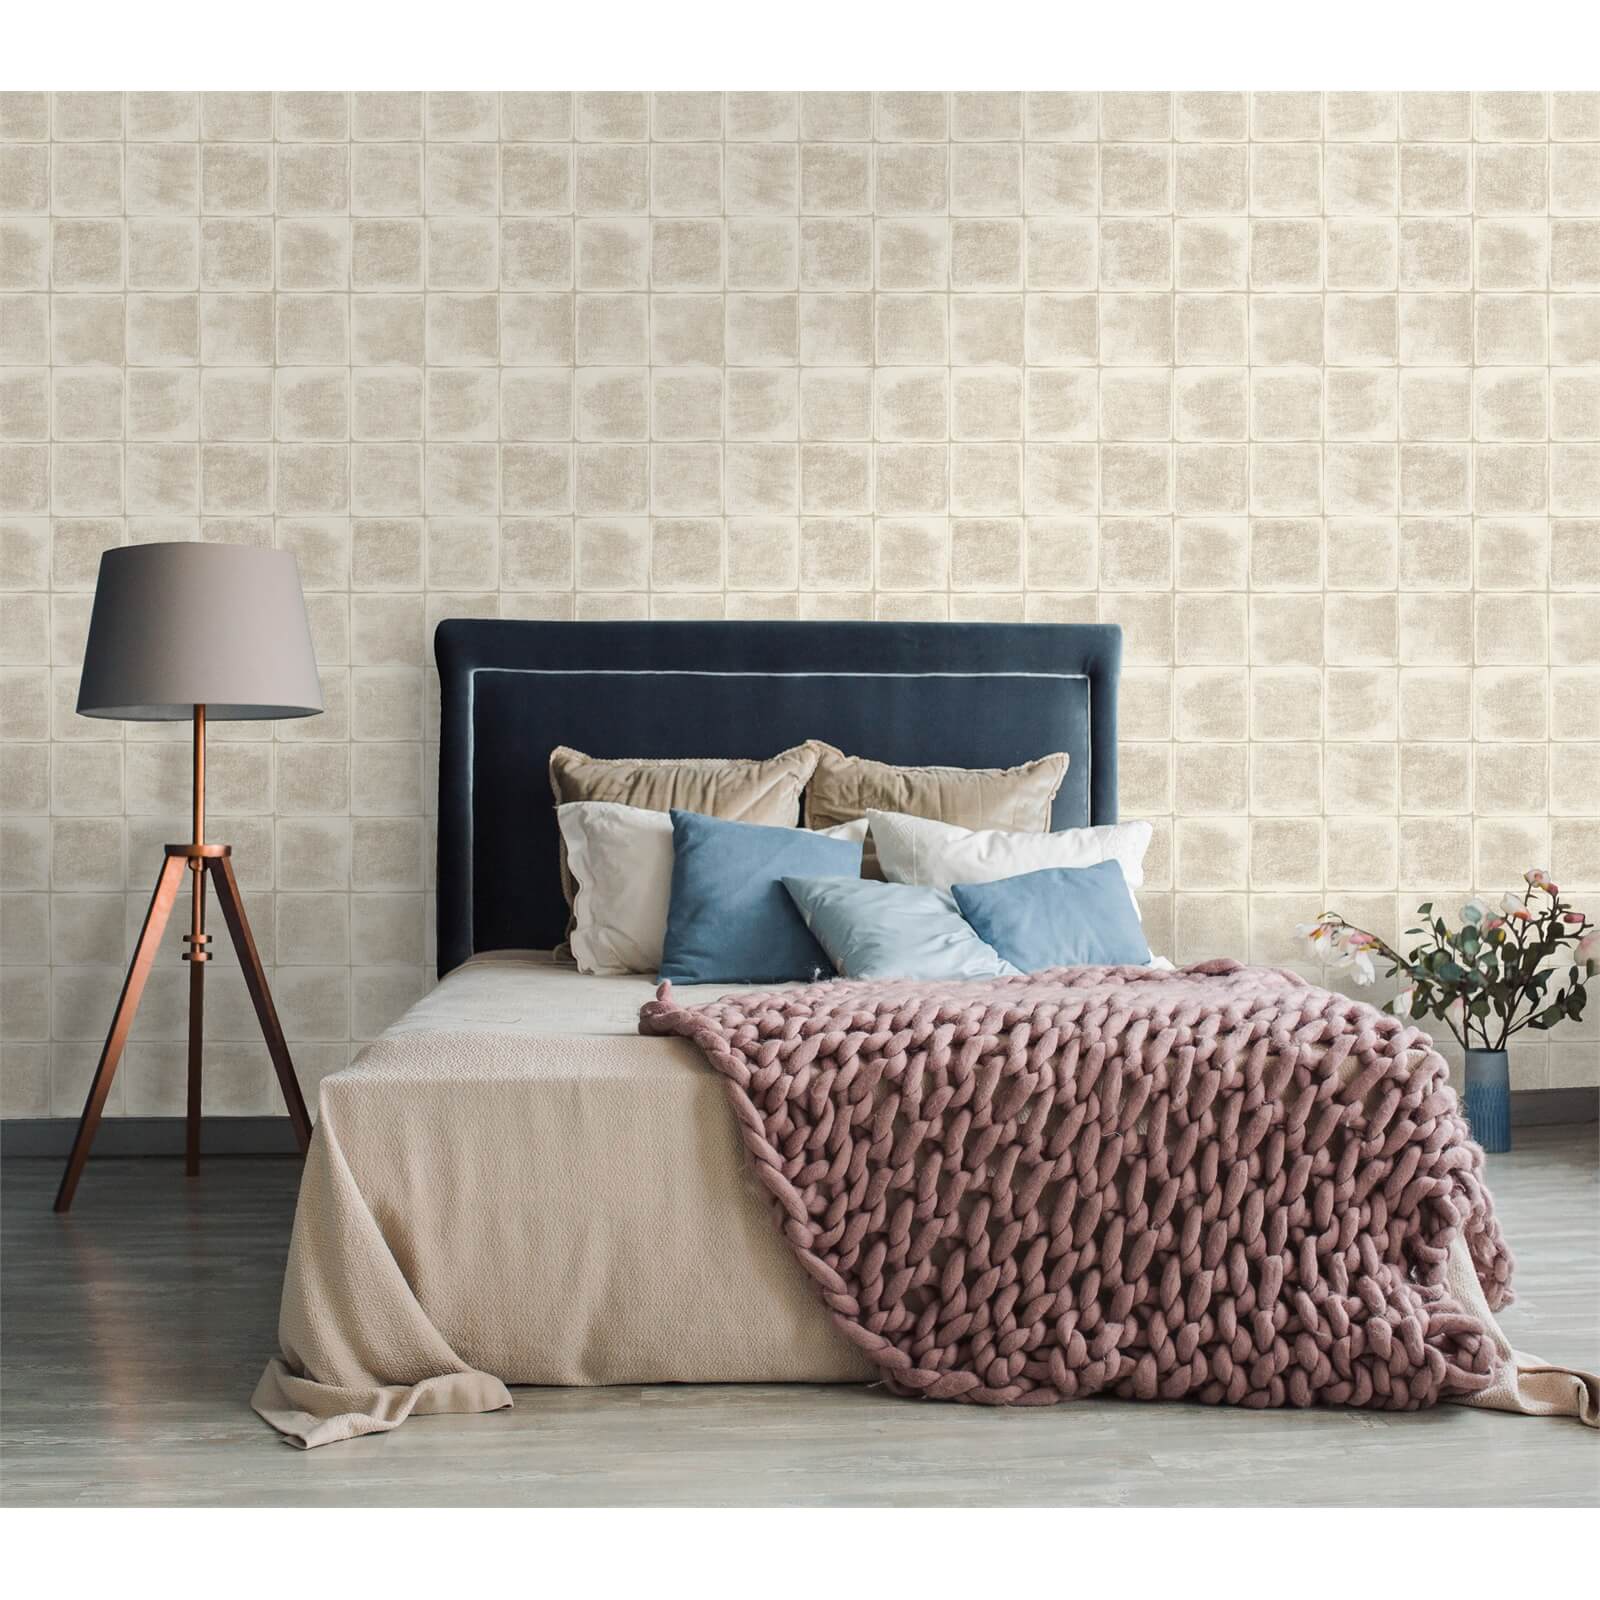 Holden Decor Furano Tile Textured Metallic Cream Wallpaper